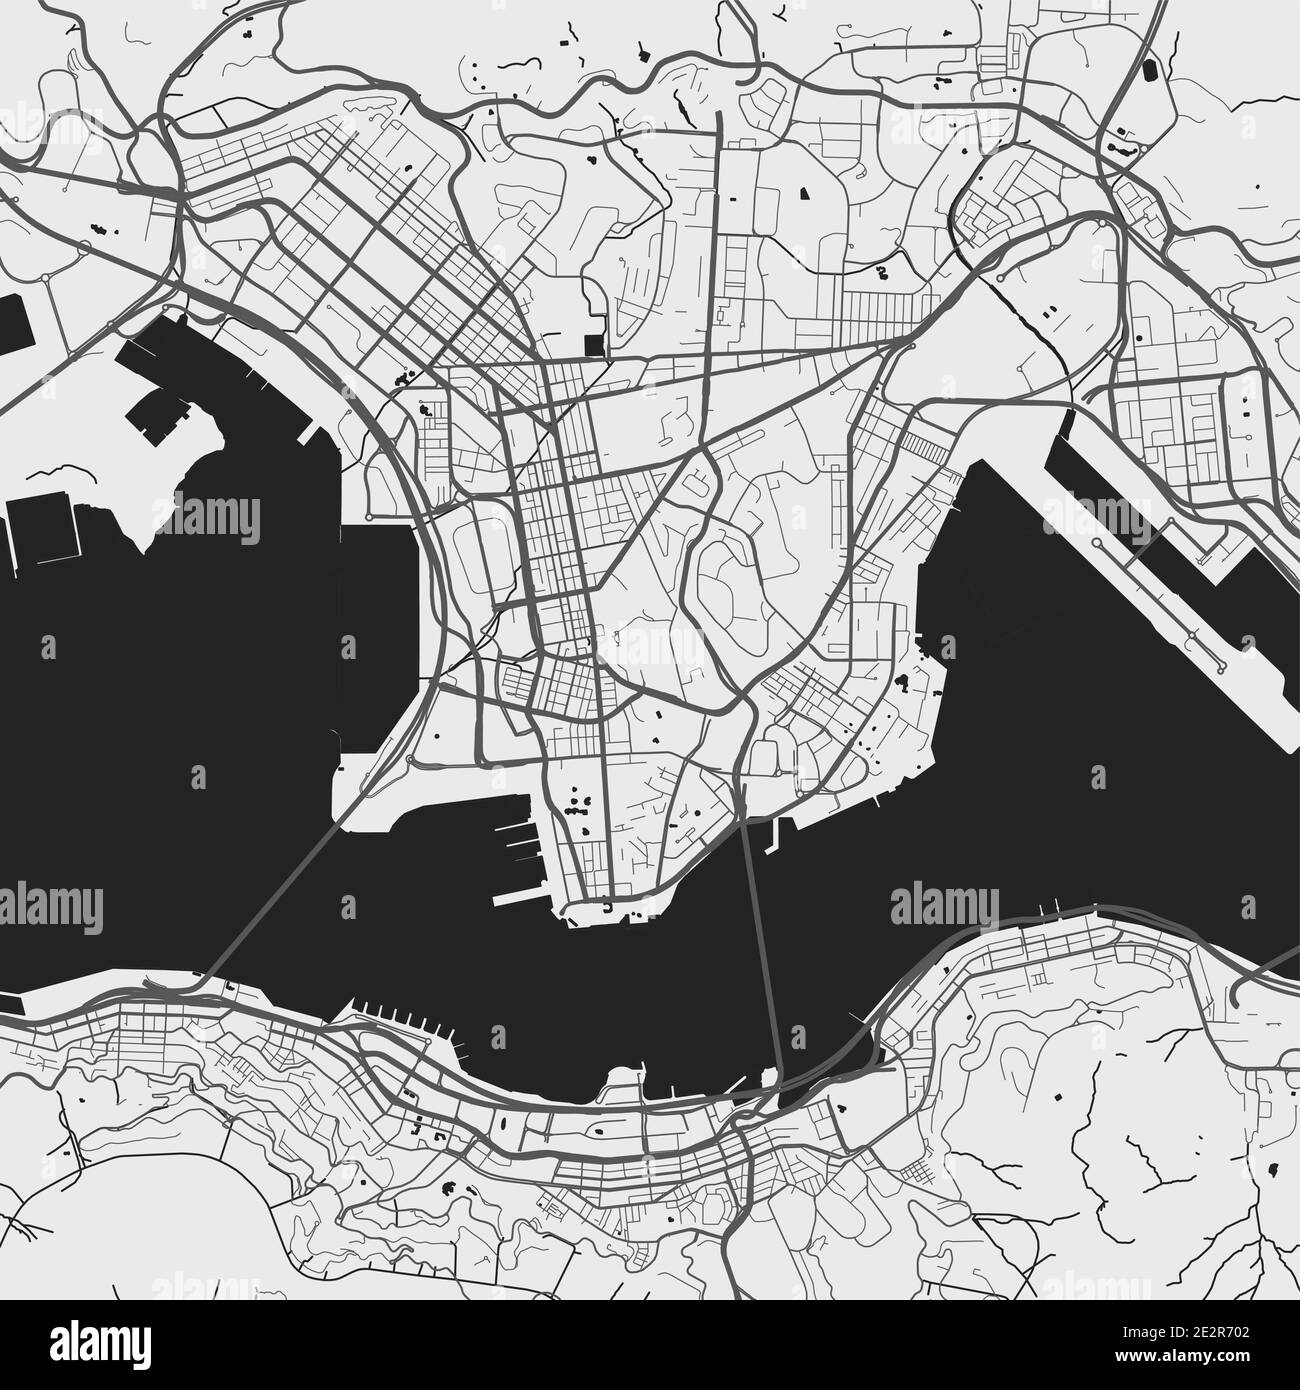 Carte de la ville urbaine de Hong Kong. Illustration vectorielle, affiche artistique en niveaux de gris sur la carte de Hong Kong. Carte des rues avec vue sur les routes et la région métropolitaine. Illustration de Vecteur